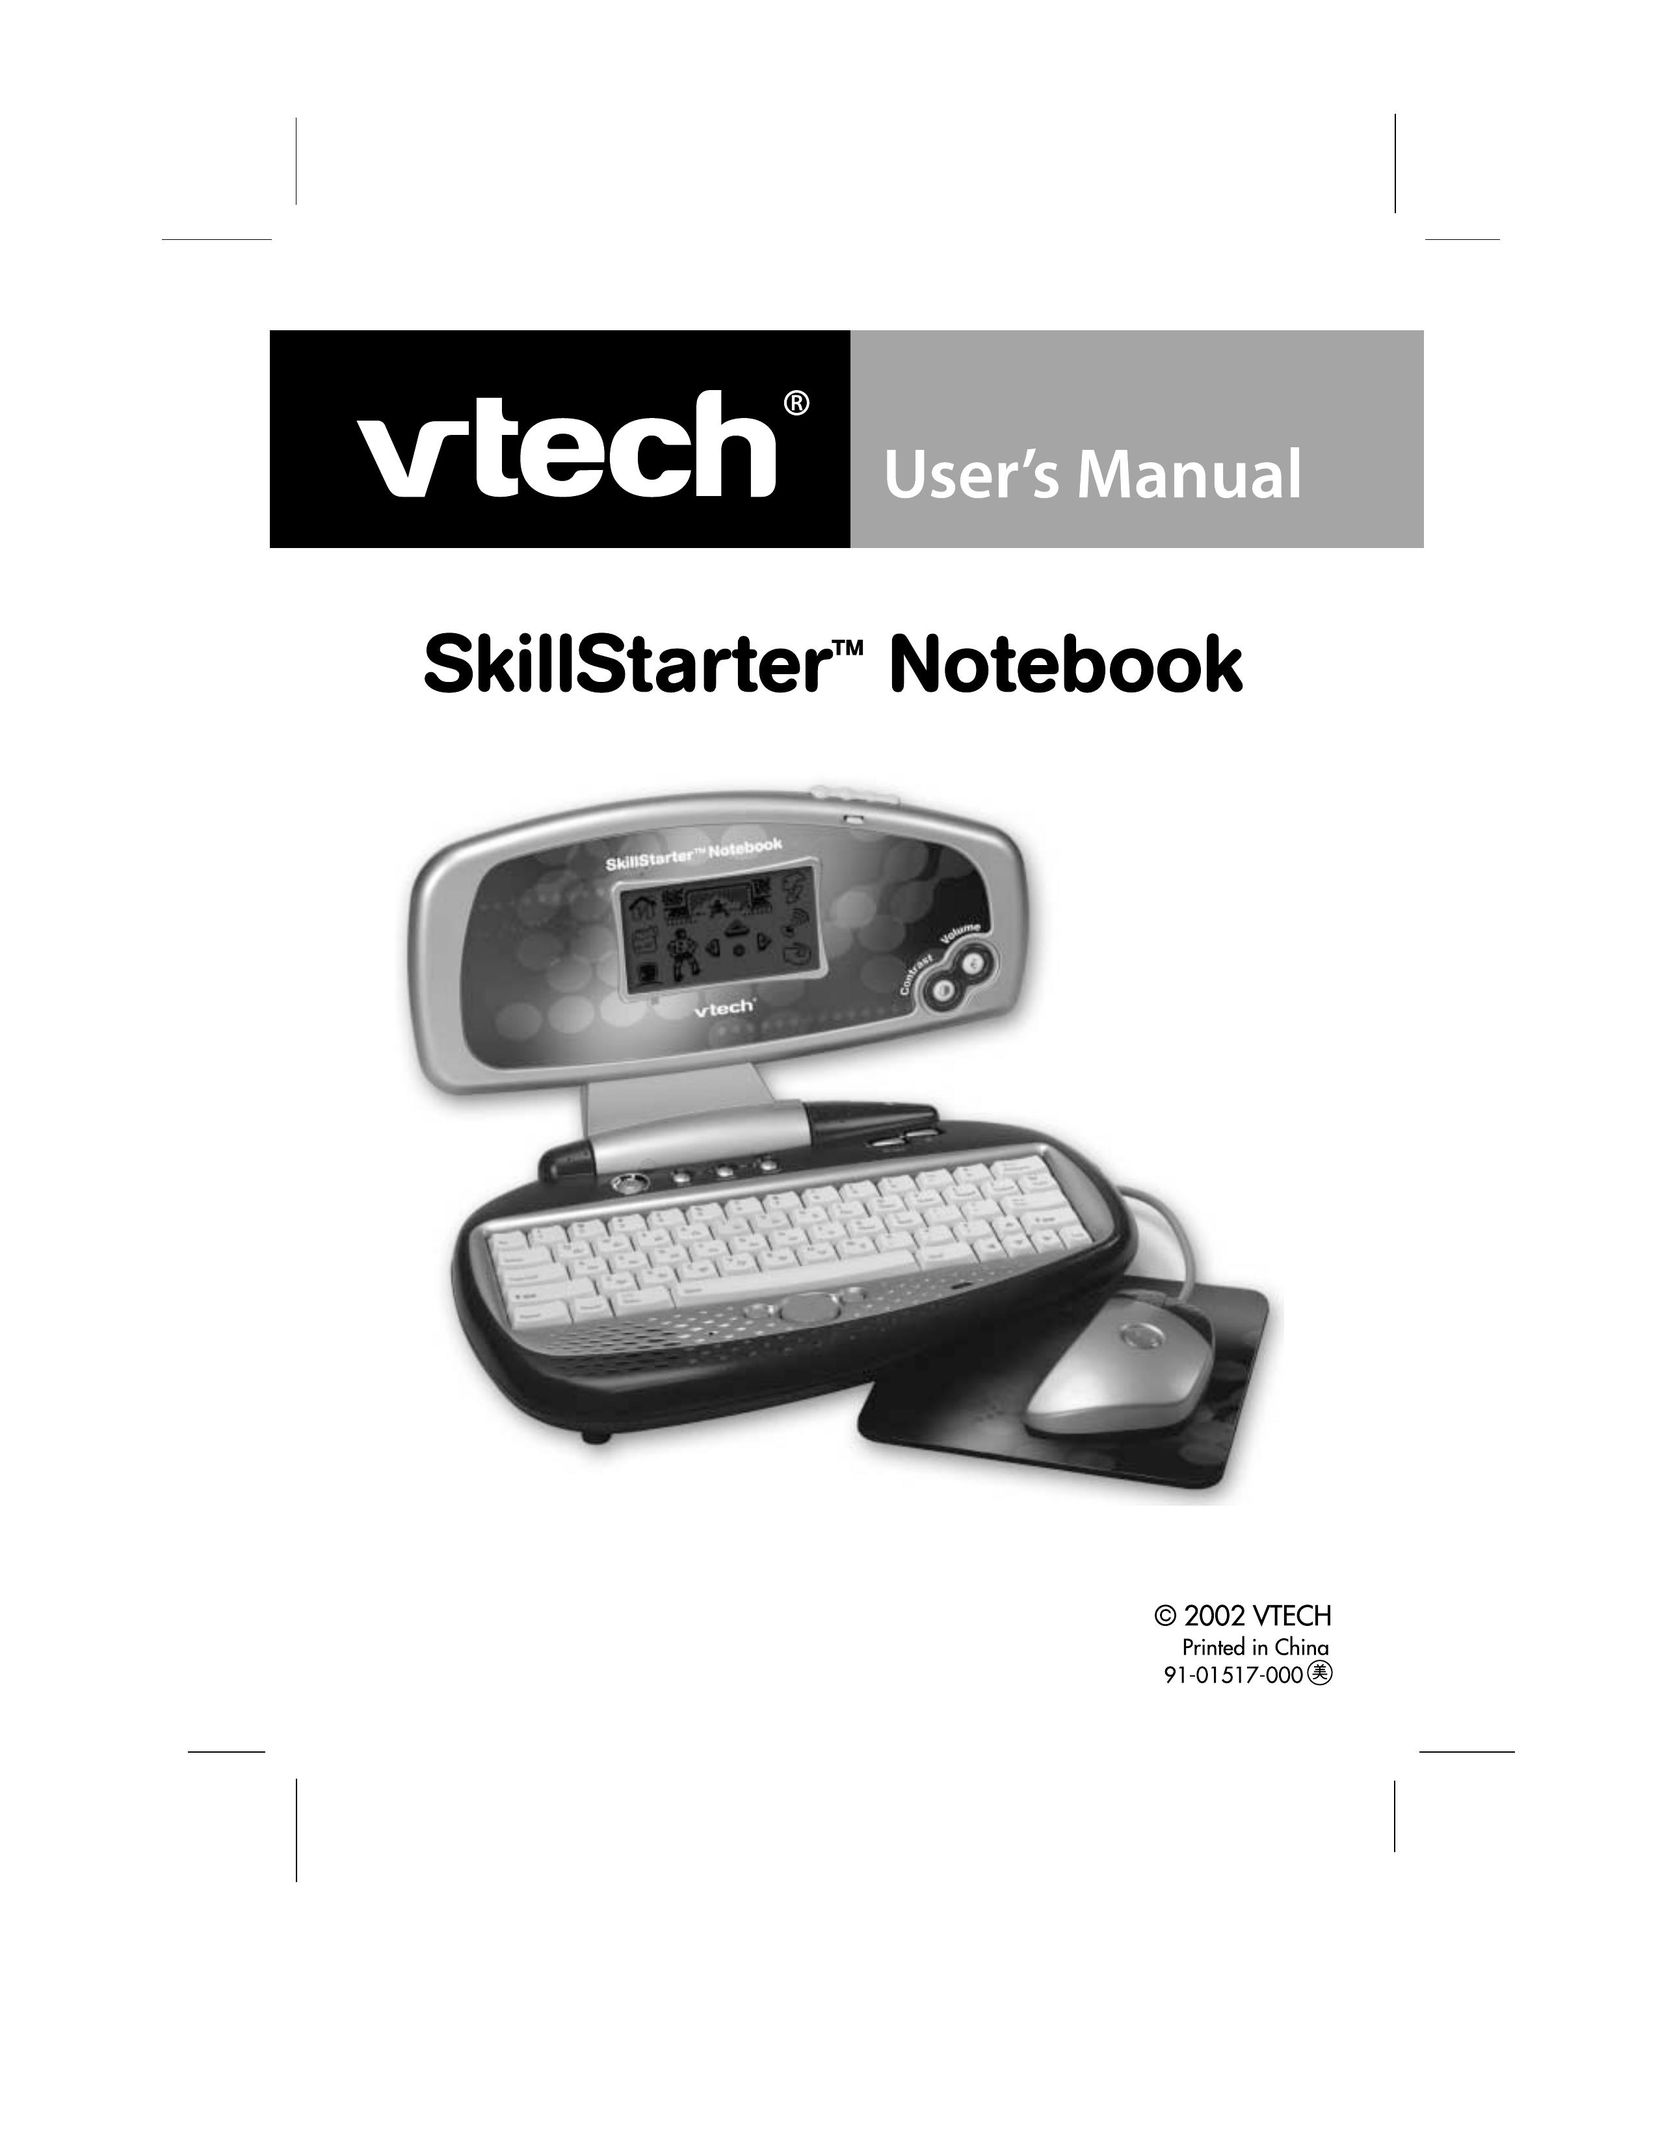 VTech SkillStarter Notebook Games User Manual